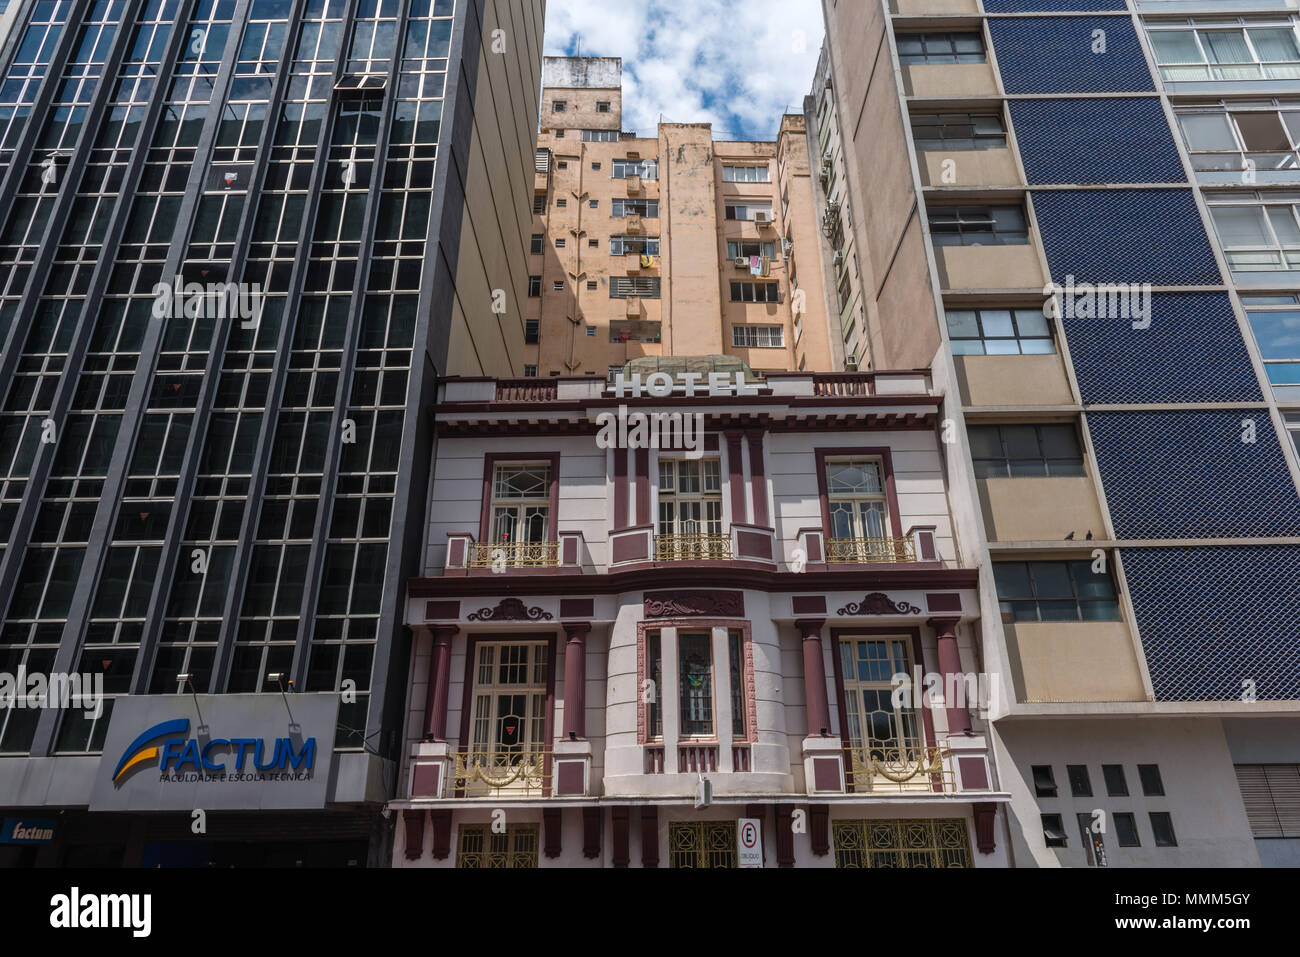 A colonial Hotel buildings, multi-storey buildings, Porto Alegre, Rio Grande do Sul, Brazil, Latin America Stock Photo